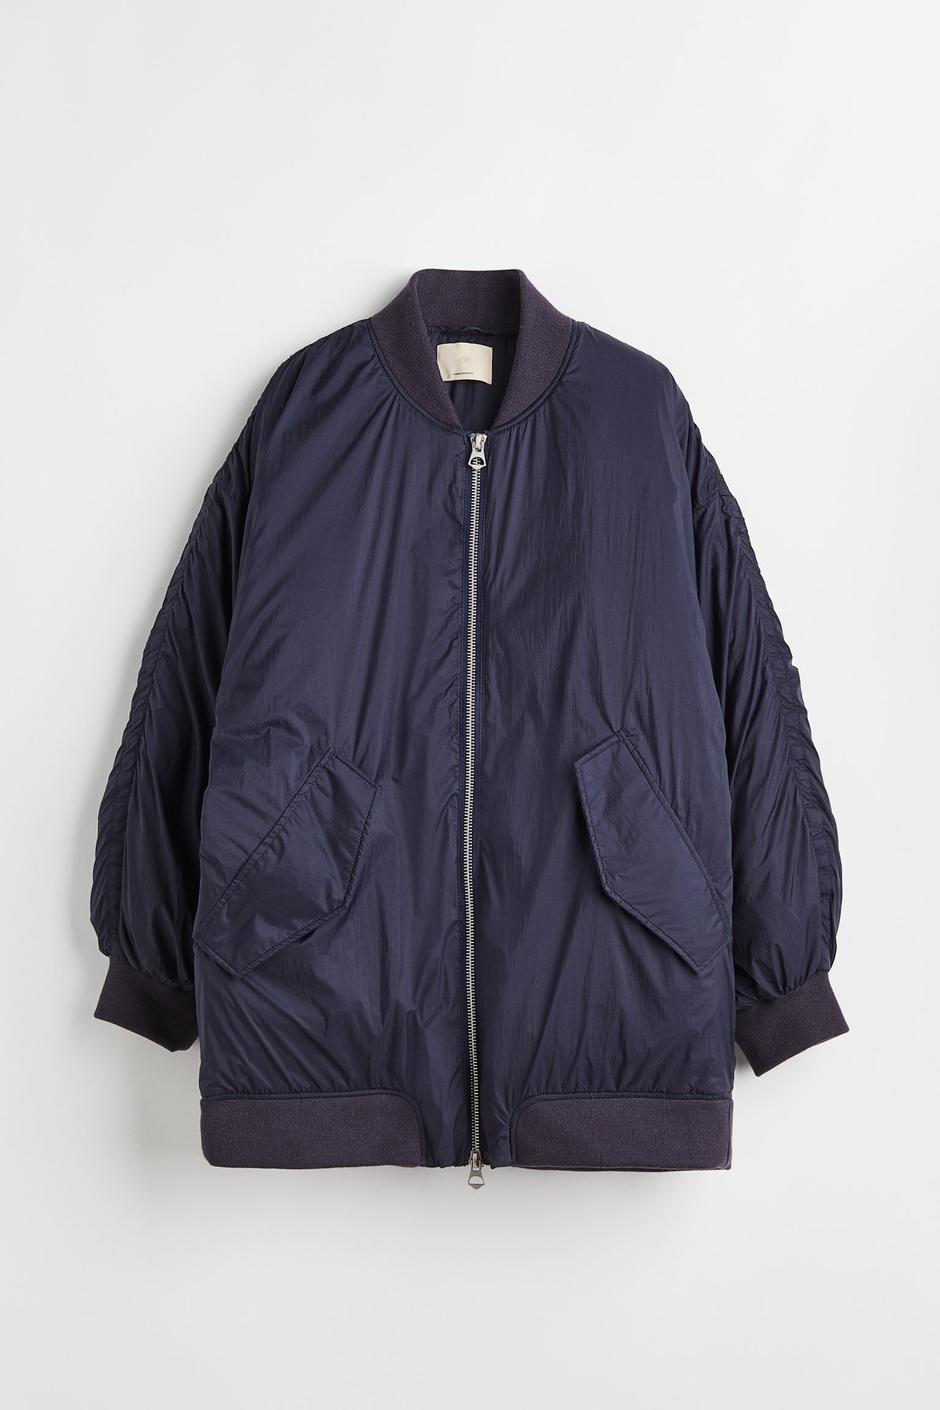 Foto: H&M, modra oversized jakna (prije 139 eura, sada 49,99 eura) | Autor: H&M